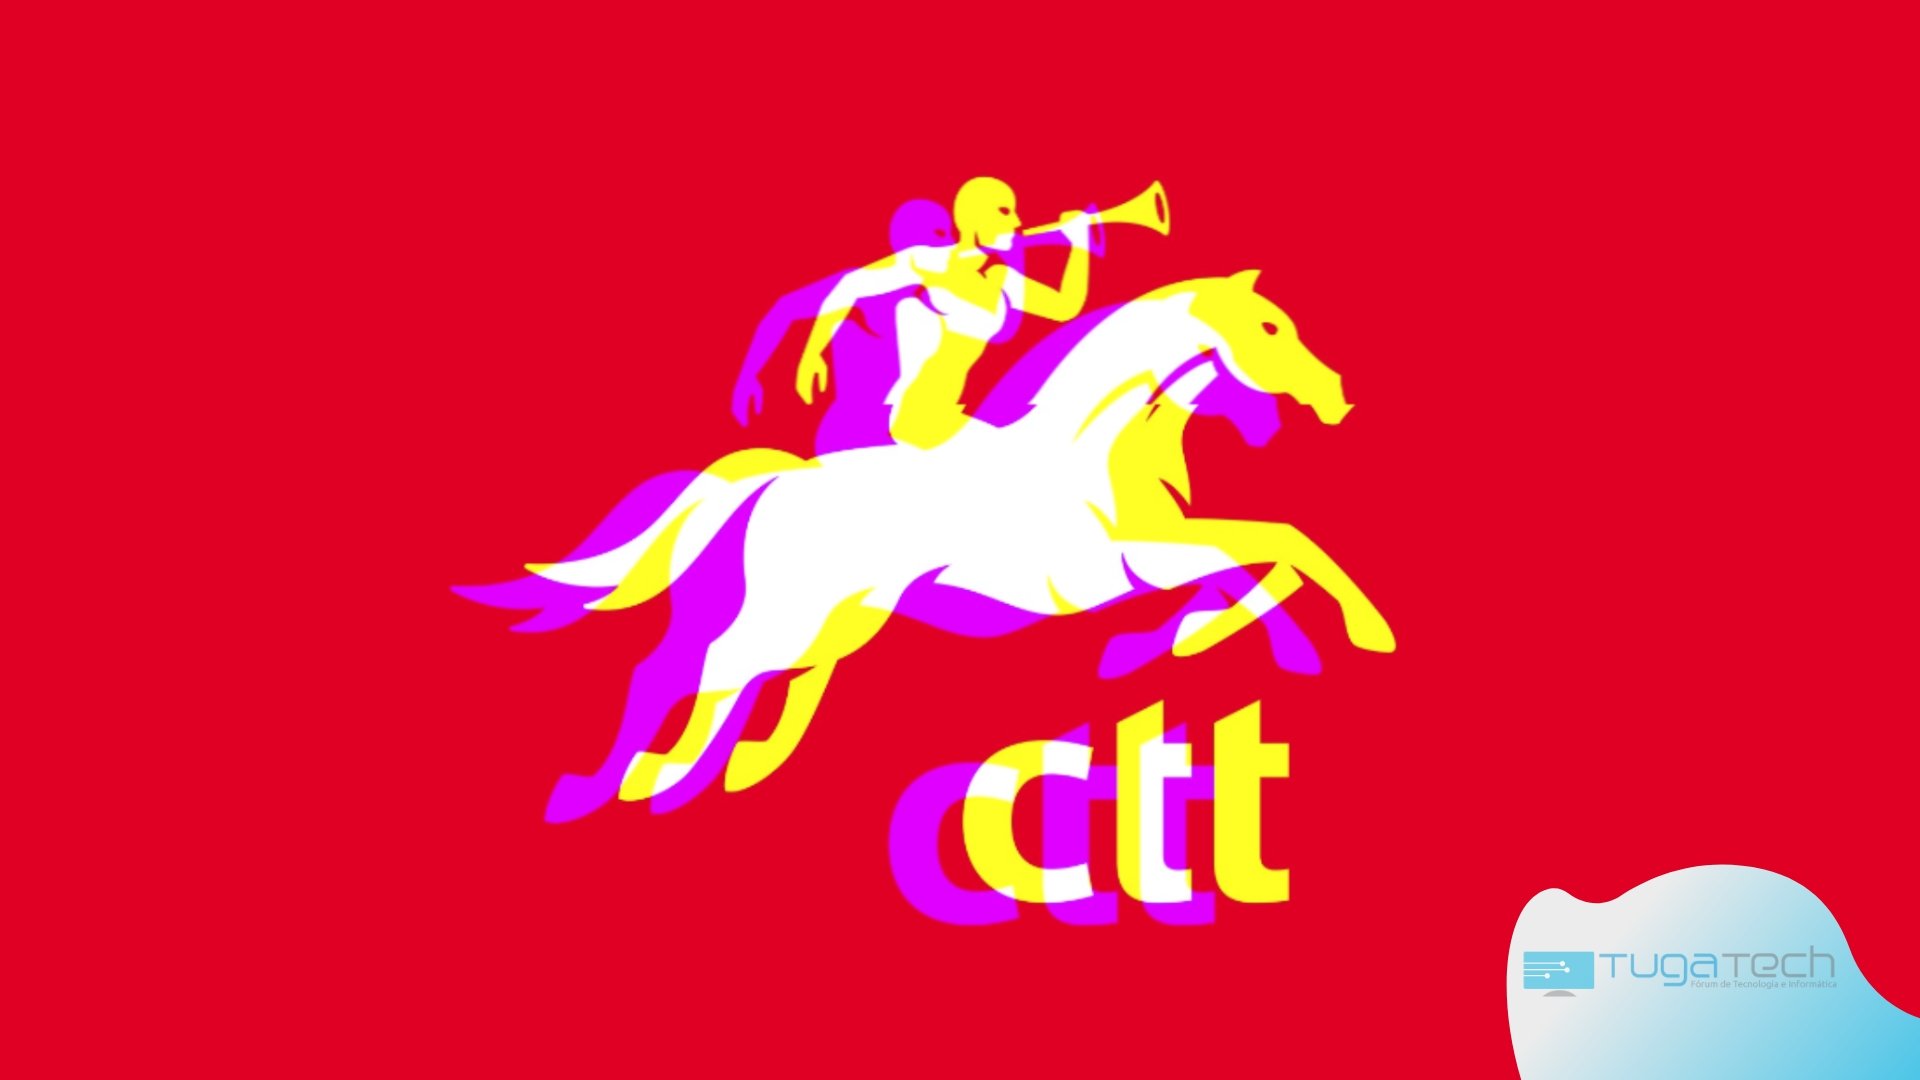 logo dos CTT com glitch